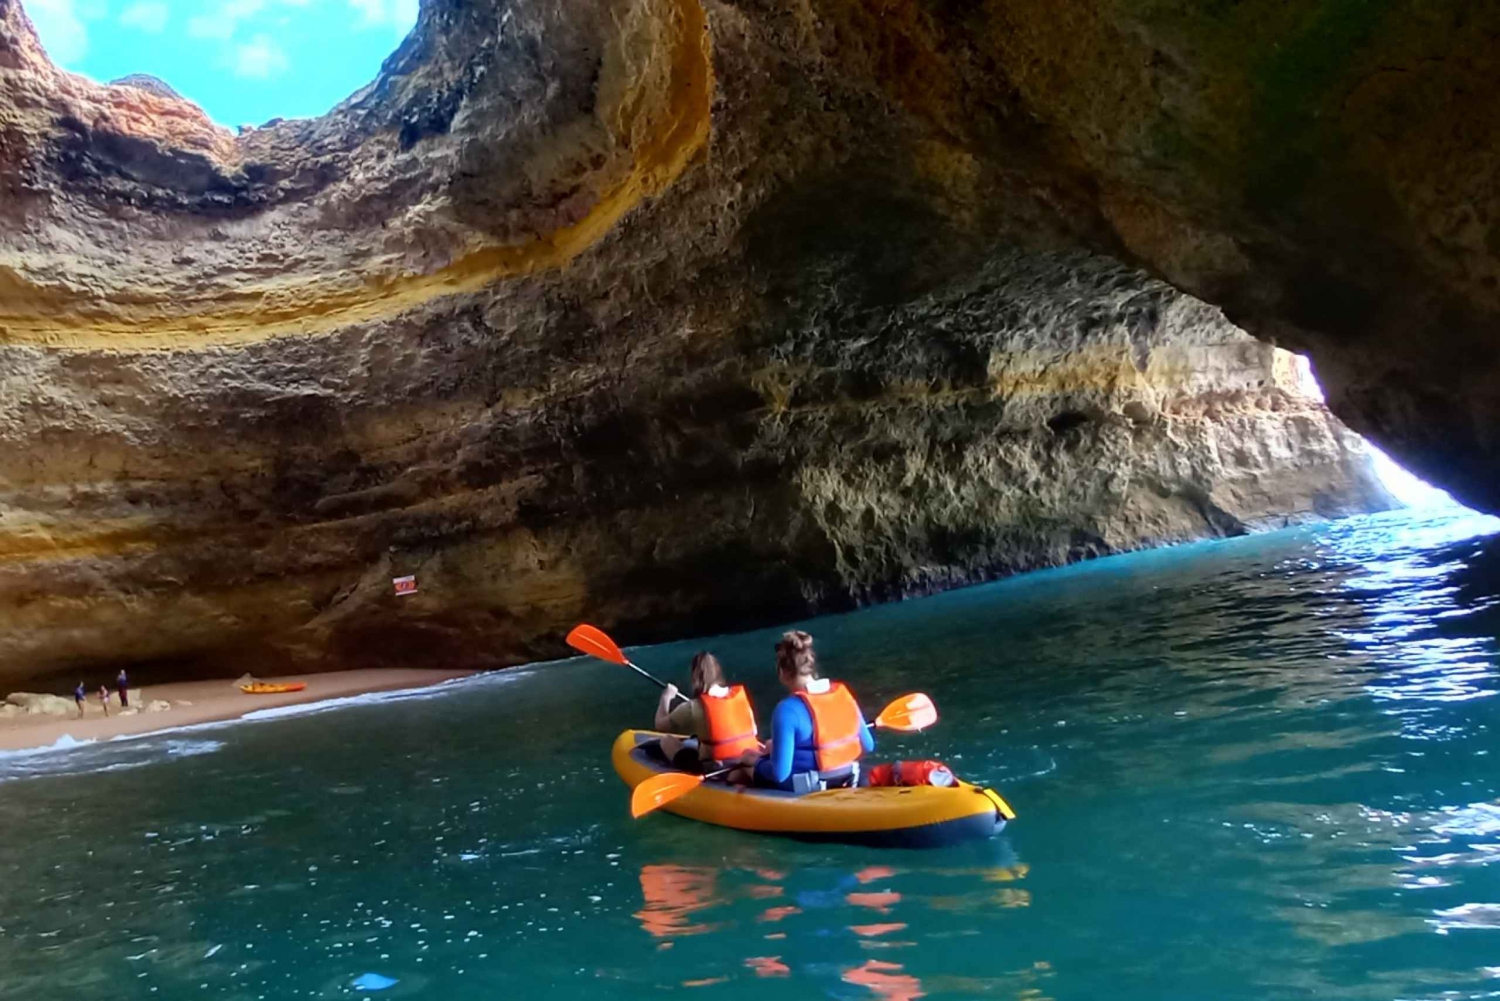 Benagil: Benagil Caves Kayaking Tour